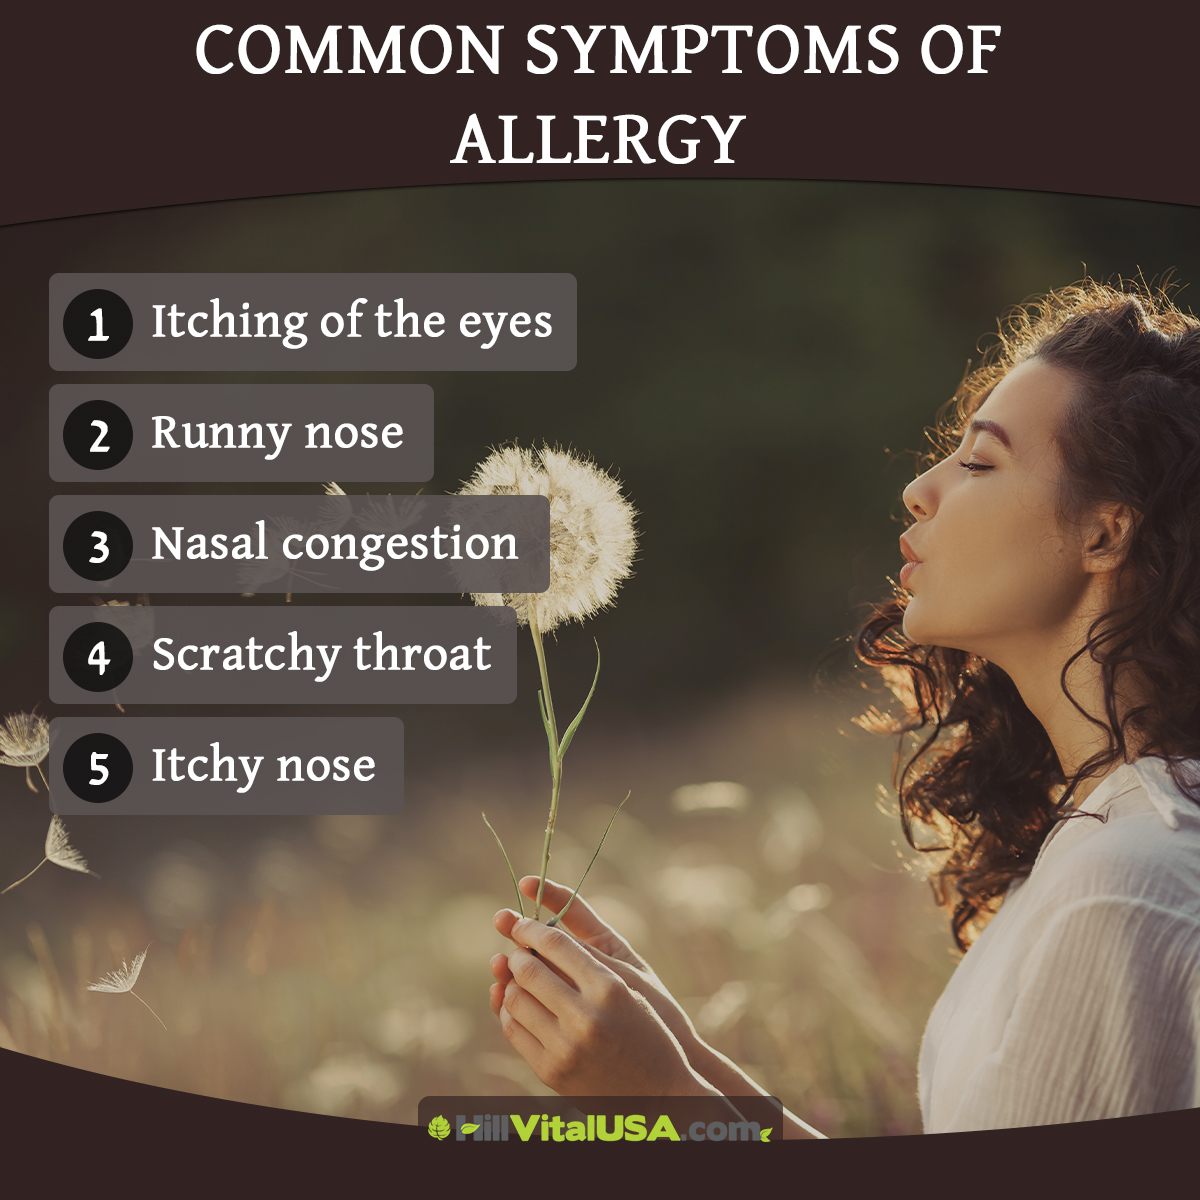 Common symptoms of allergy